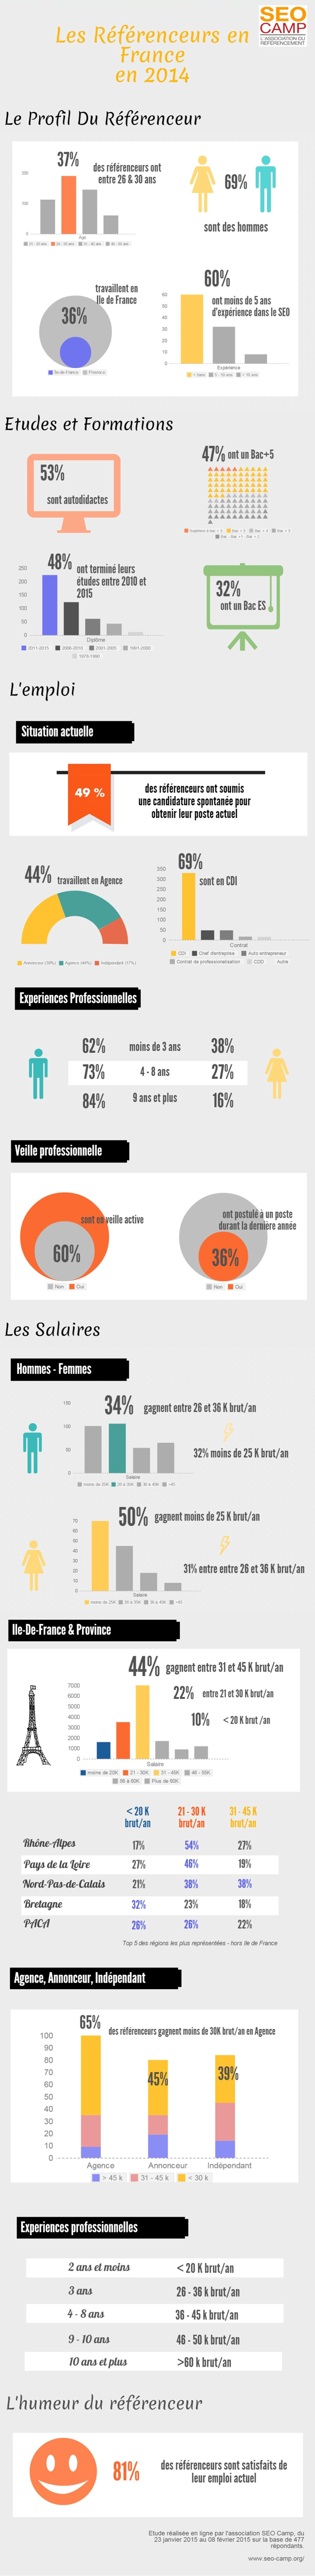 Infographie SEO Camp : salaires dans le SEO en 2014